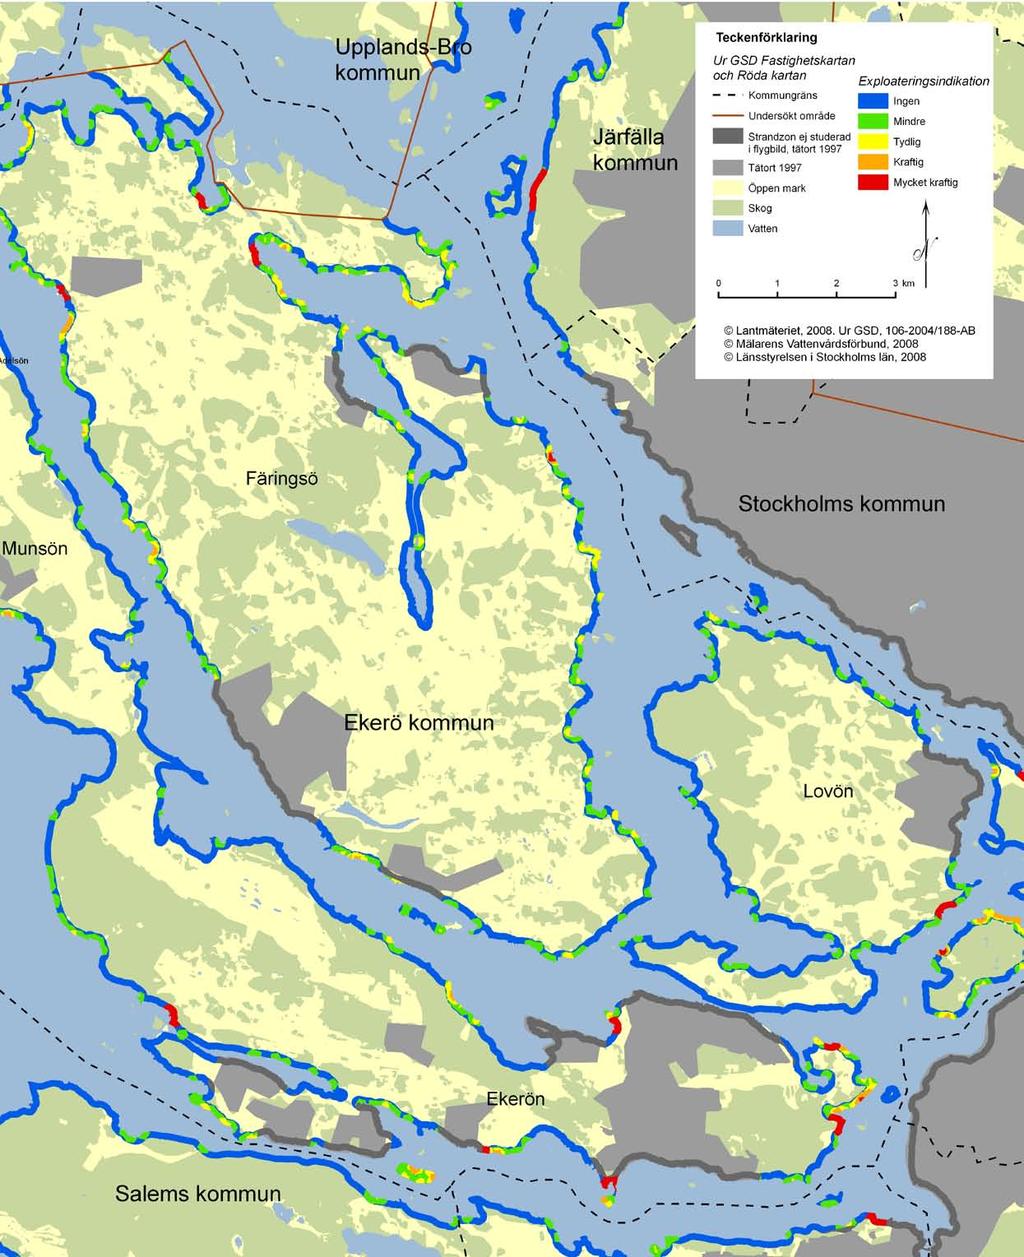 2 Kartan visar resultat från Mälarens vattenvårdsförbunds kartering av strand exploatering kring Mälaren.